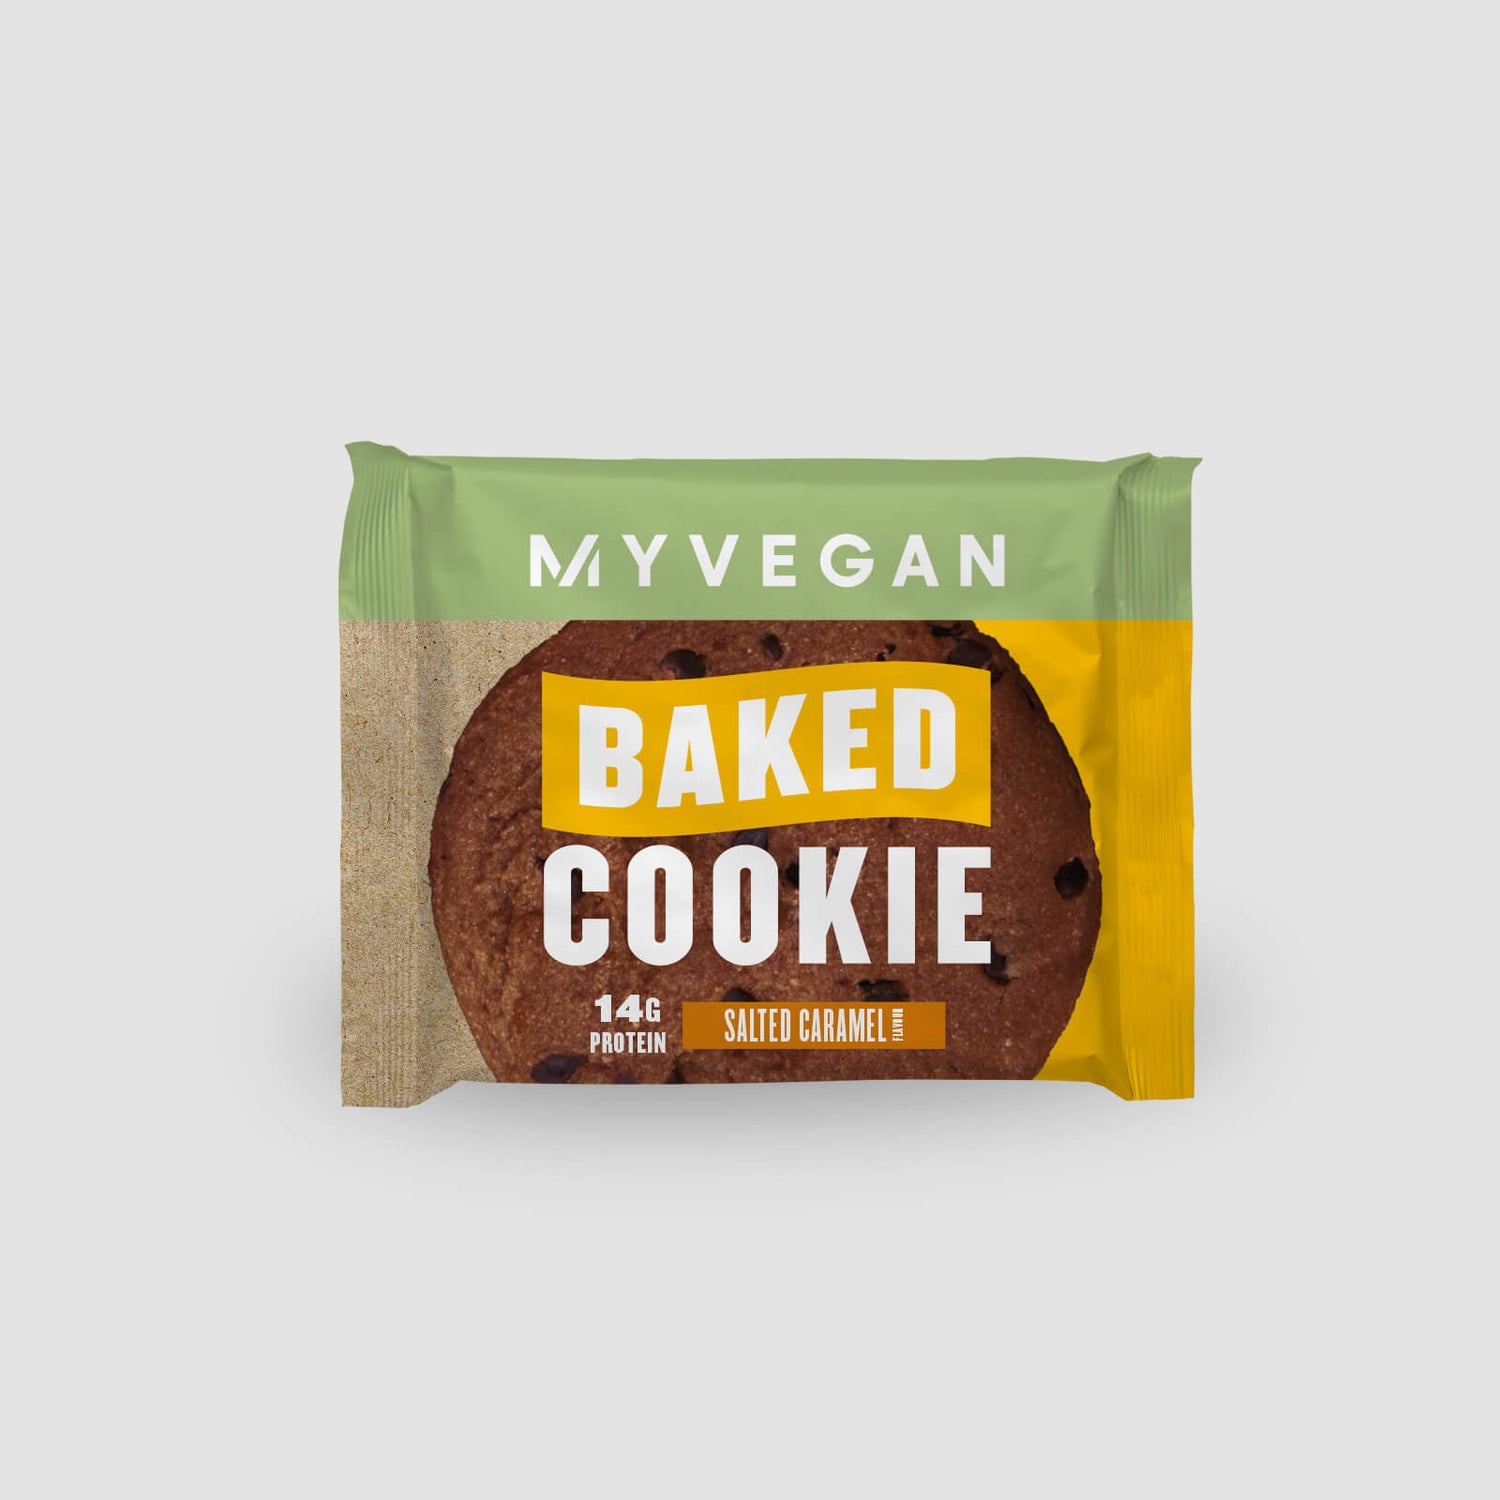 Veganiškas baltyminis sausainis „Protein Cookie“ (mėginys) - Sūdytos karamelės